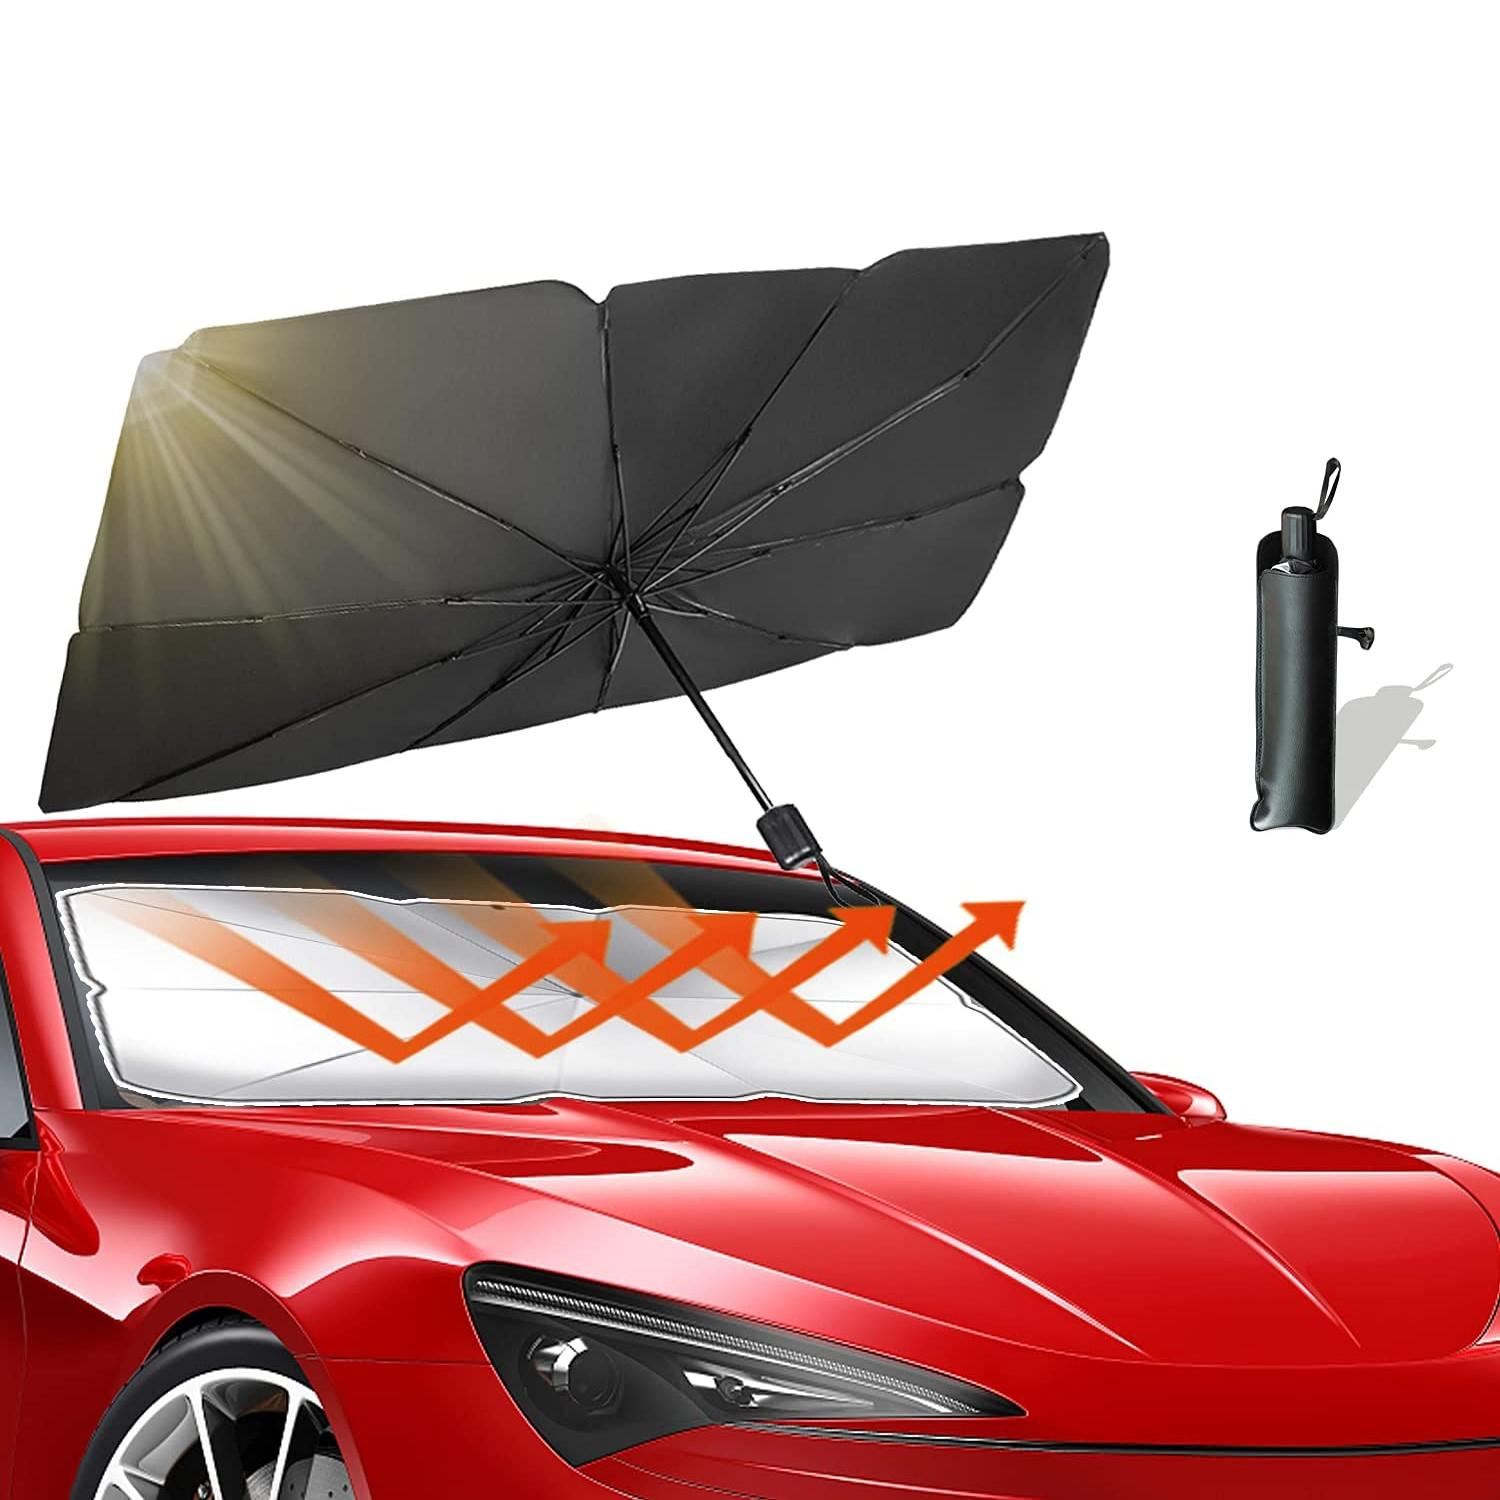 https://www.apfelkiste.ch/media/catalog/product/1/3/133x76cm-praktische-windschutzscheibe-sonnenblende-sonnenschirm-fur-das-auto.jpeg